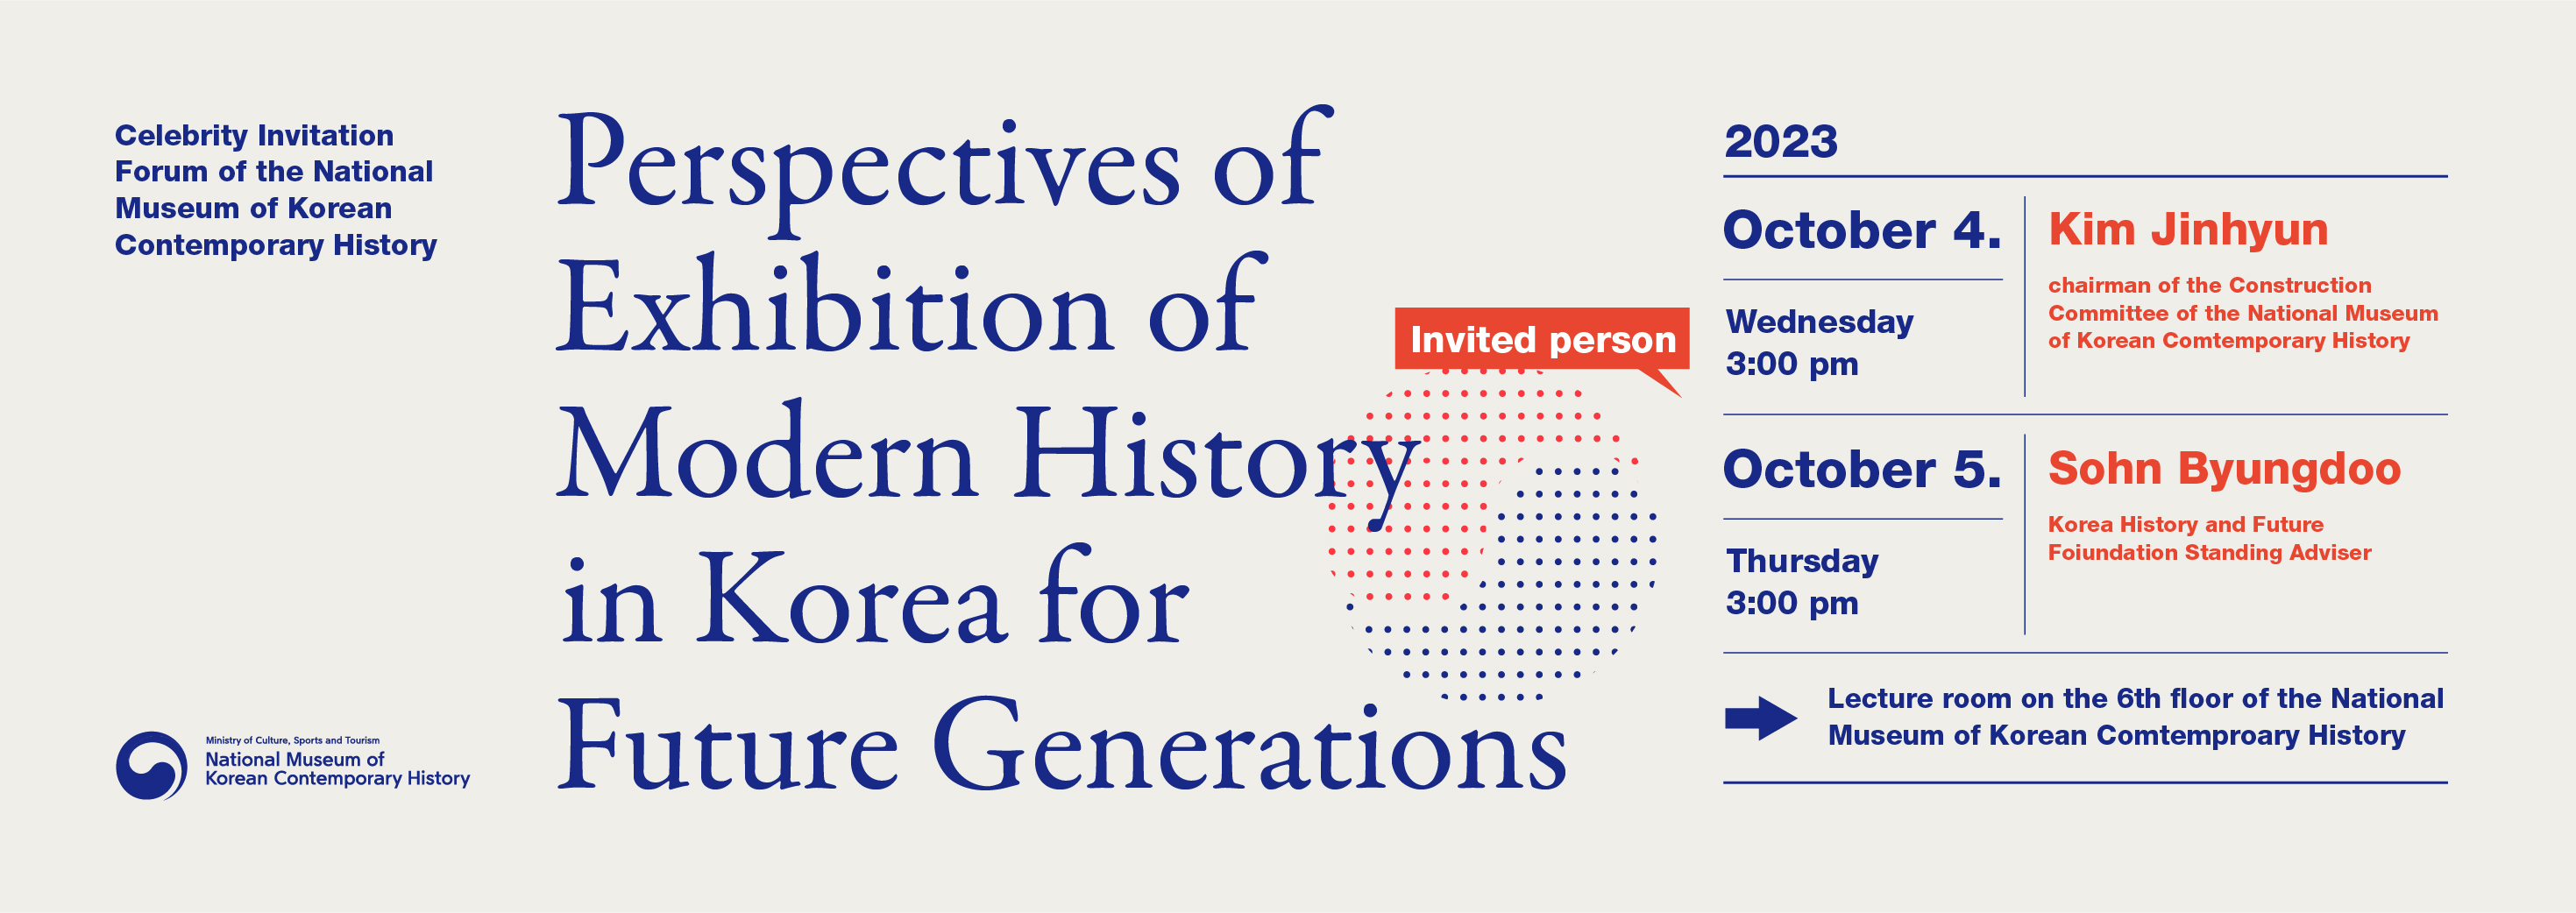 대한민국역사박물관 명사 초청 포럼 미래세대를 위한 대한민국 현대사 전시의 지향 동맹 속 냉전과 발전